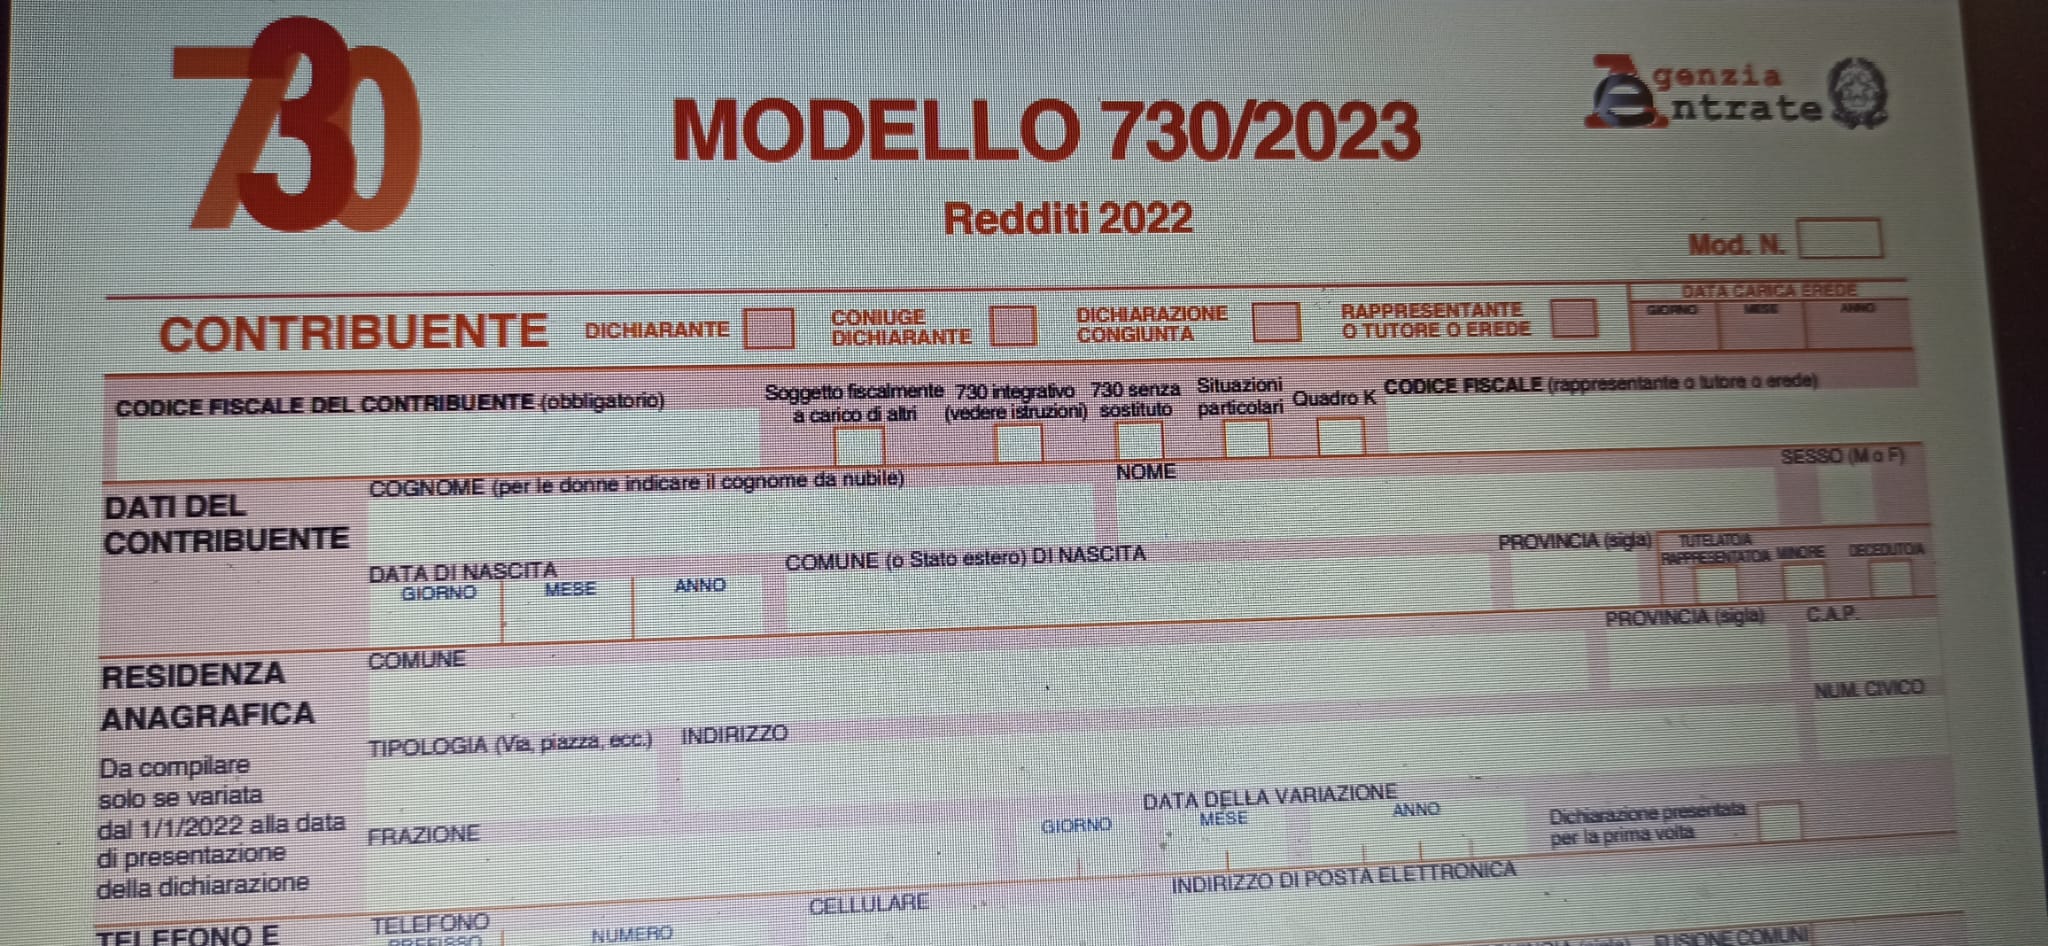 Modello 730/2023 precompilato, attenti a questo errore